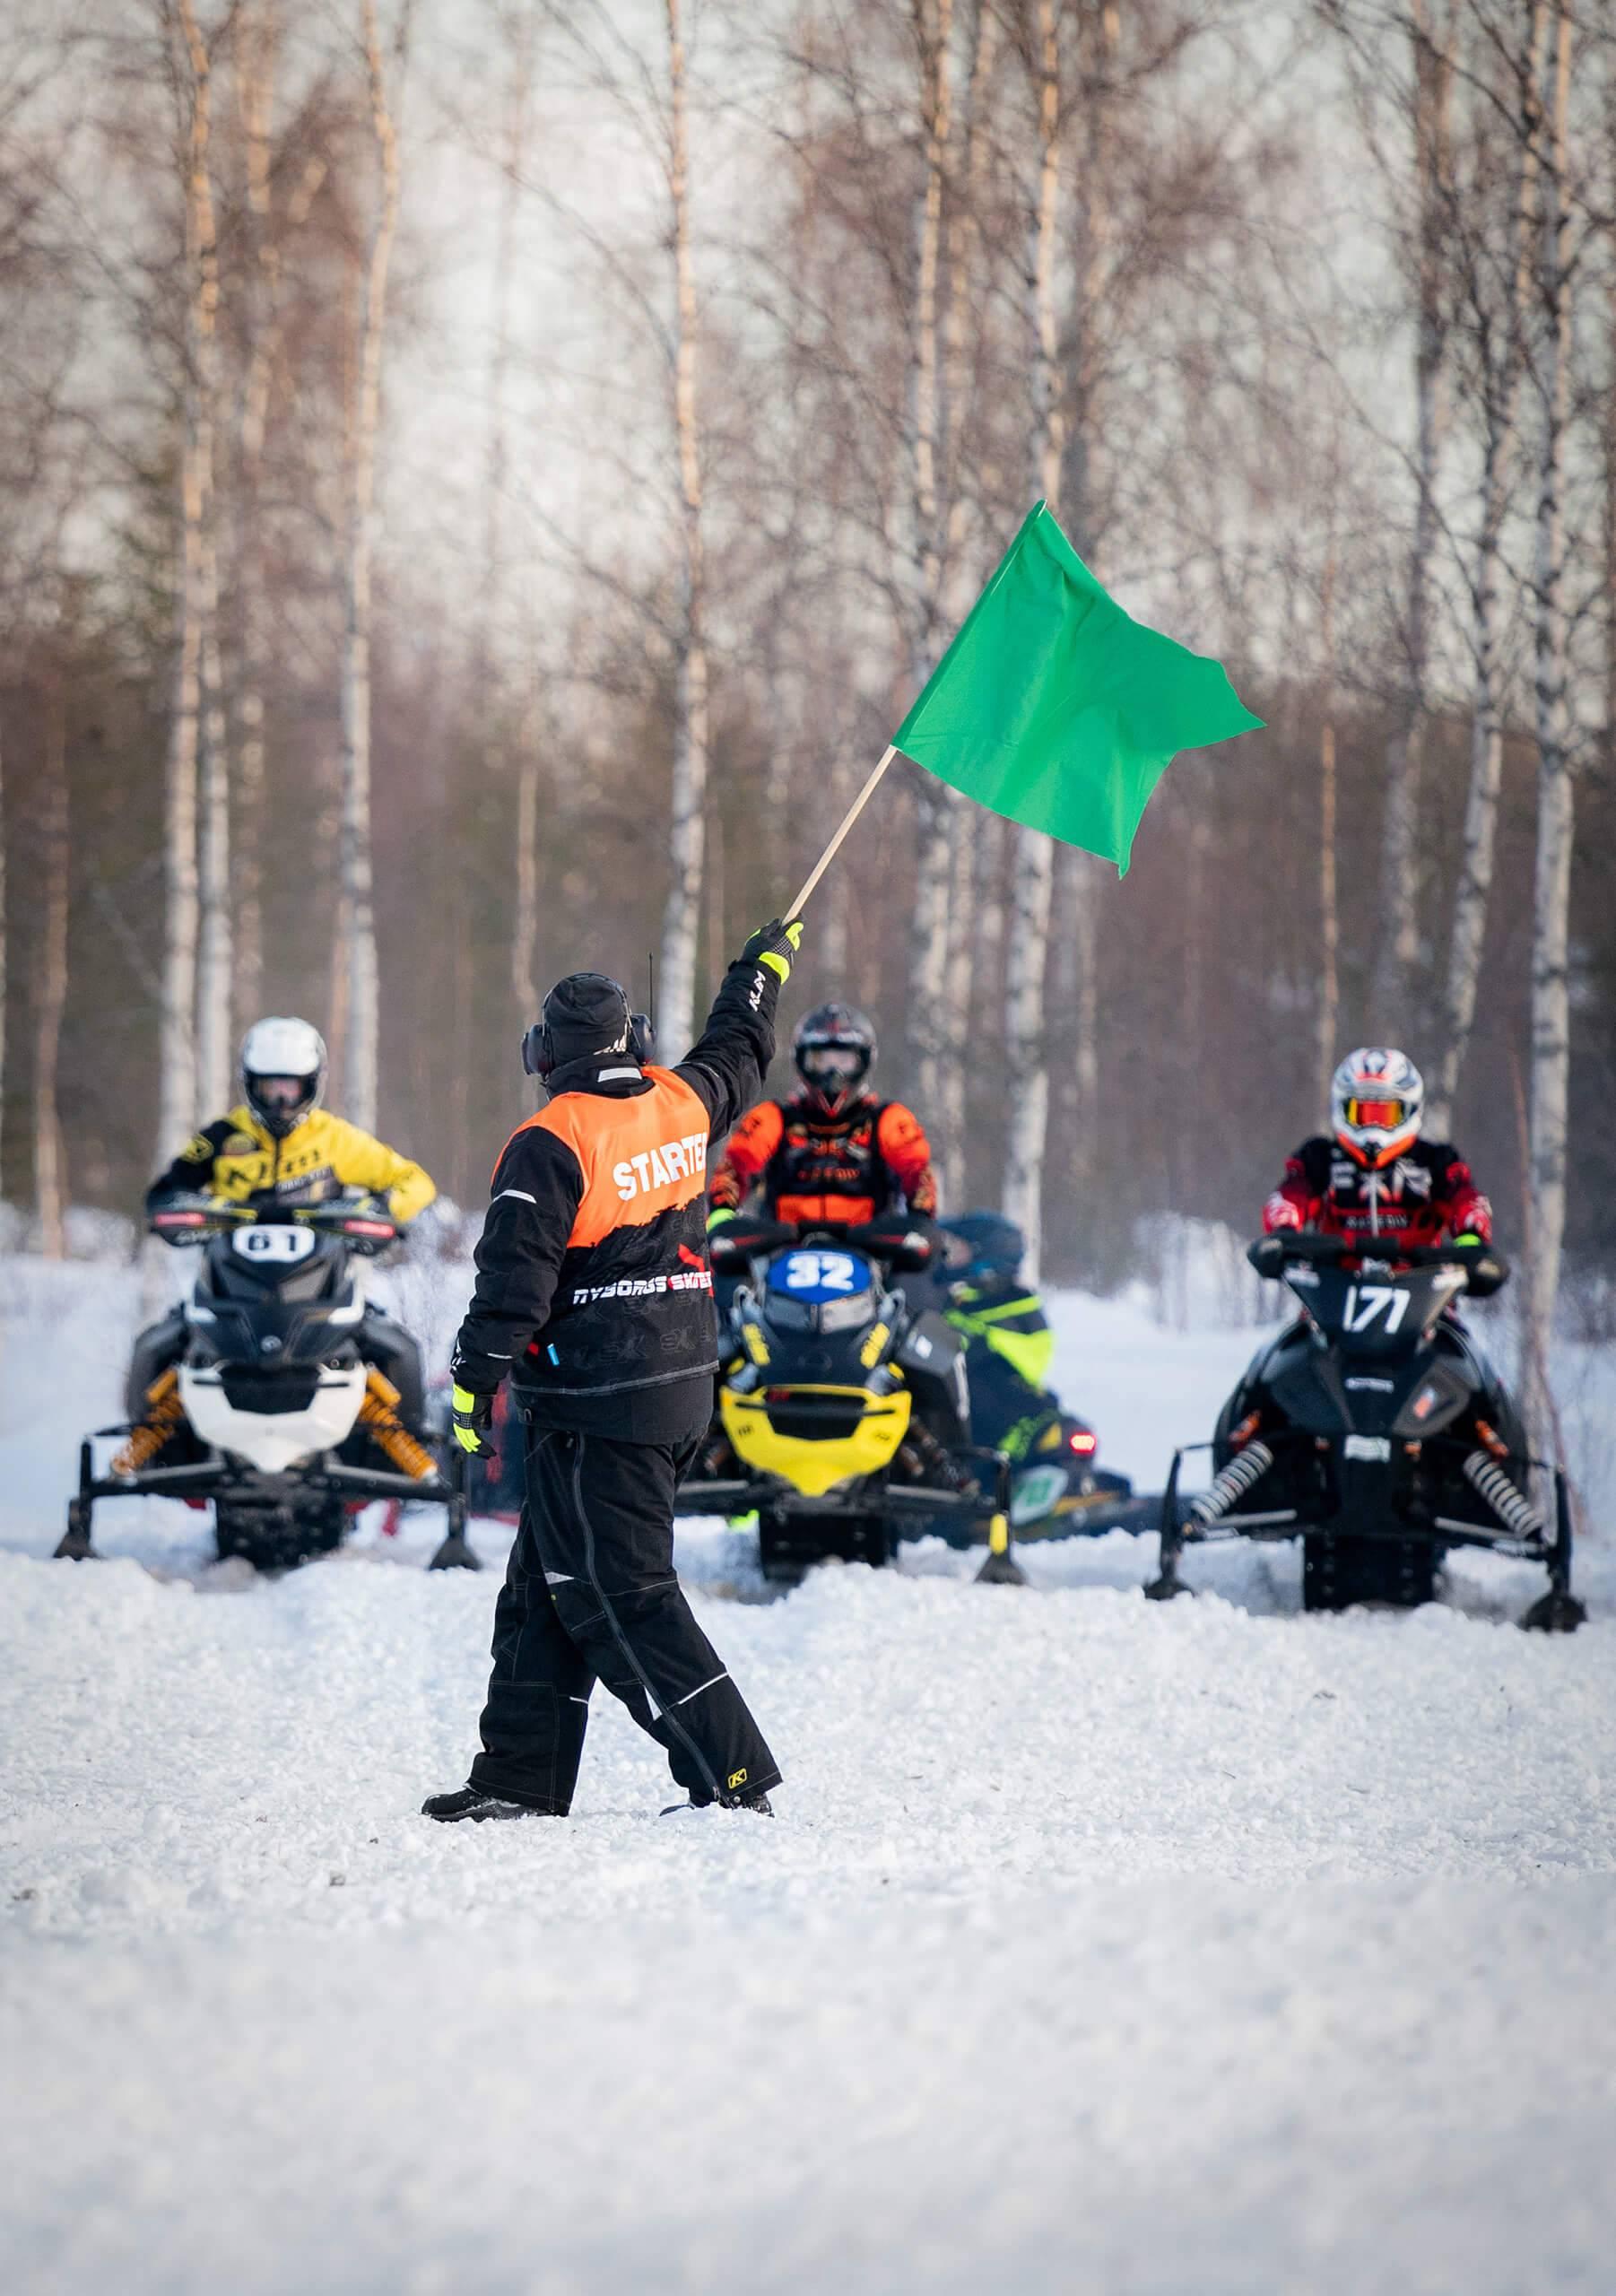 En Svemofunktionär håller upp en grön flagga framför skoterförare vid startlinjen.